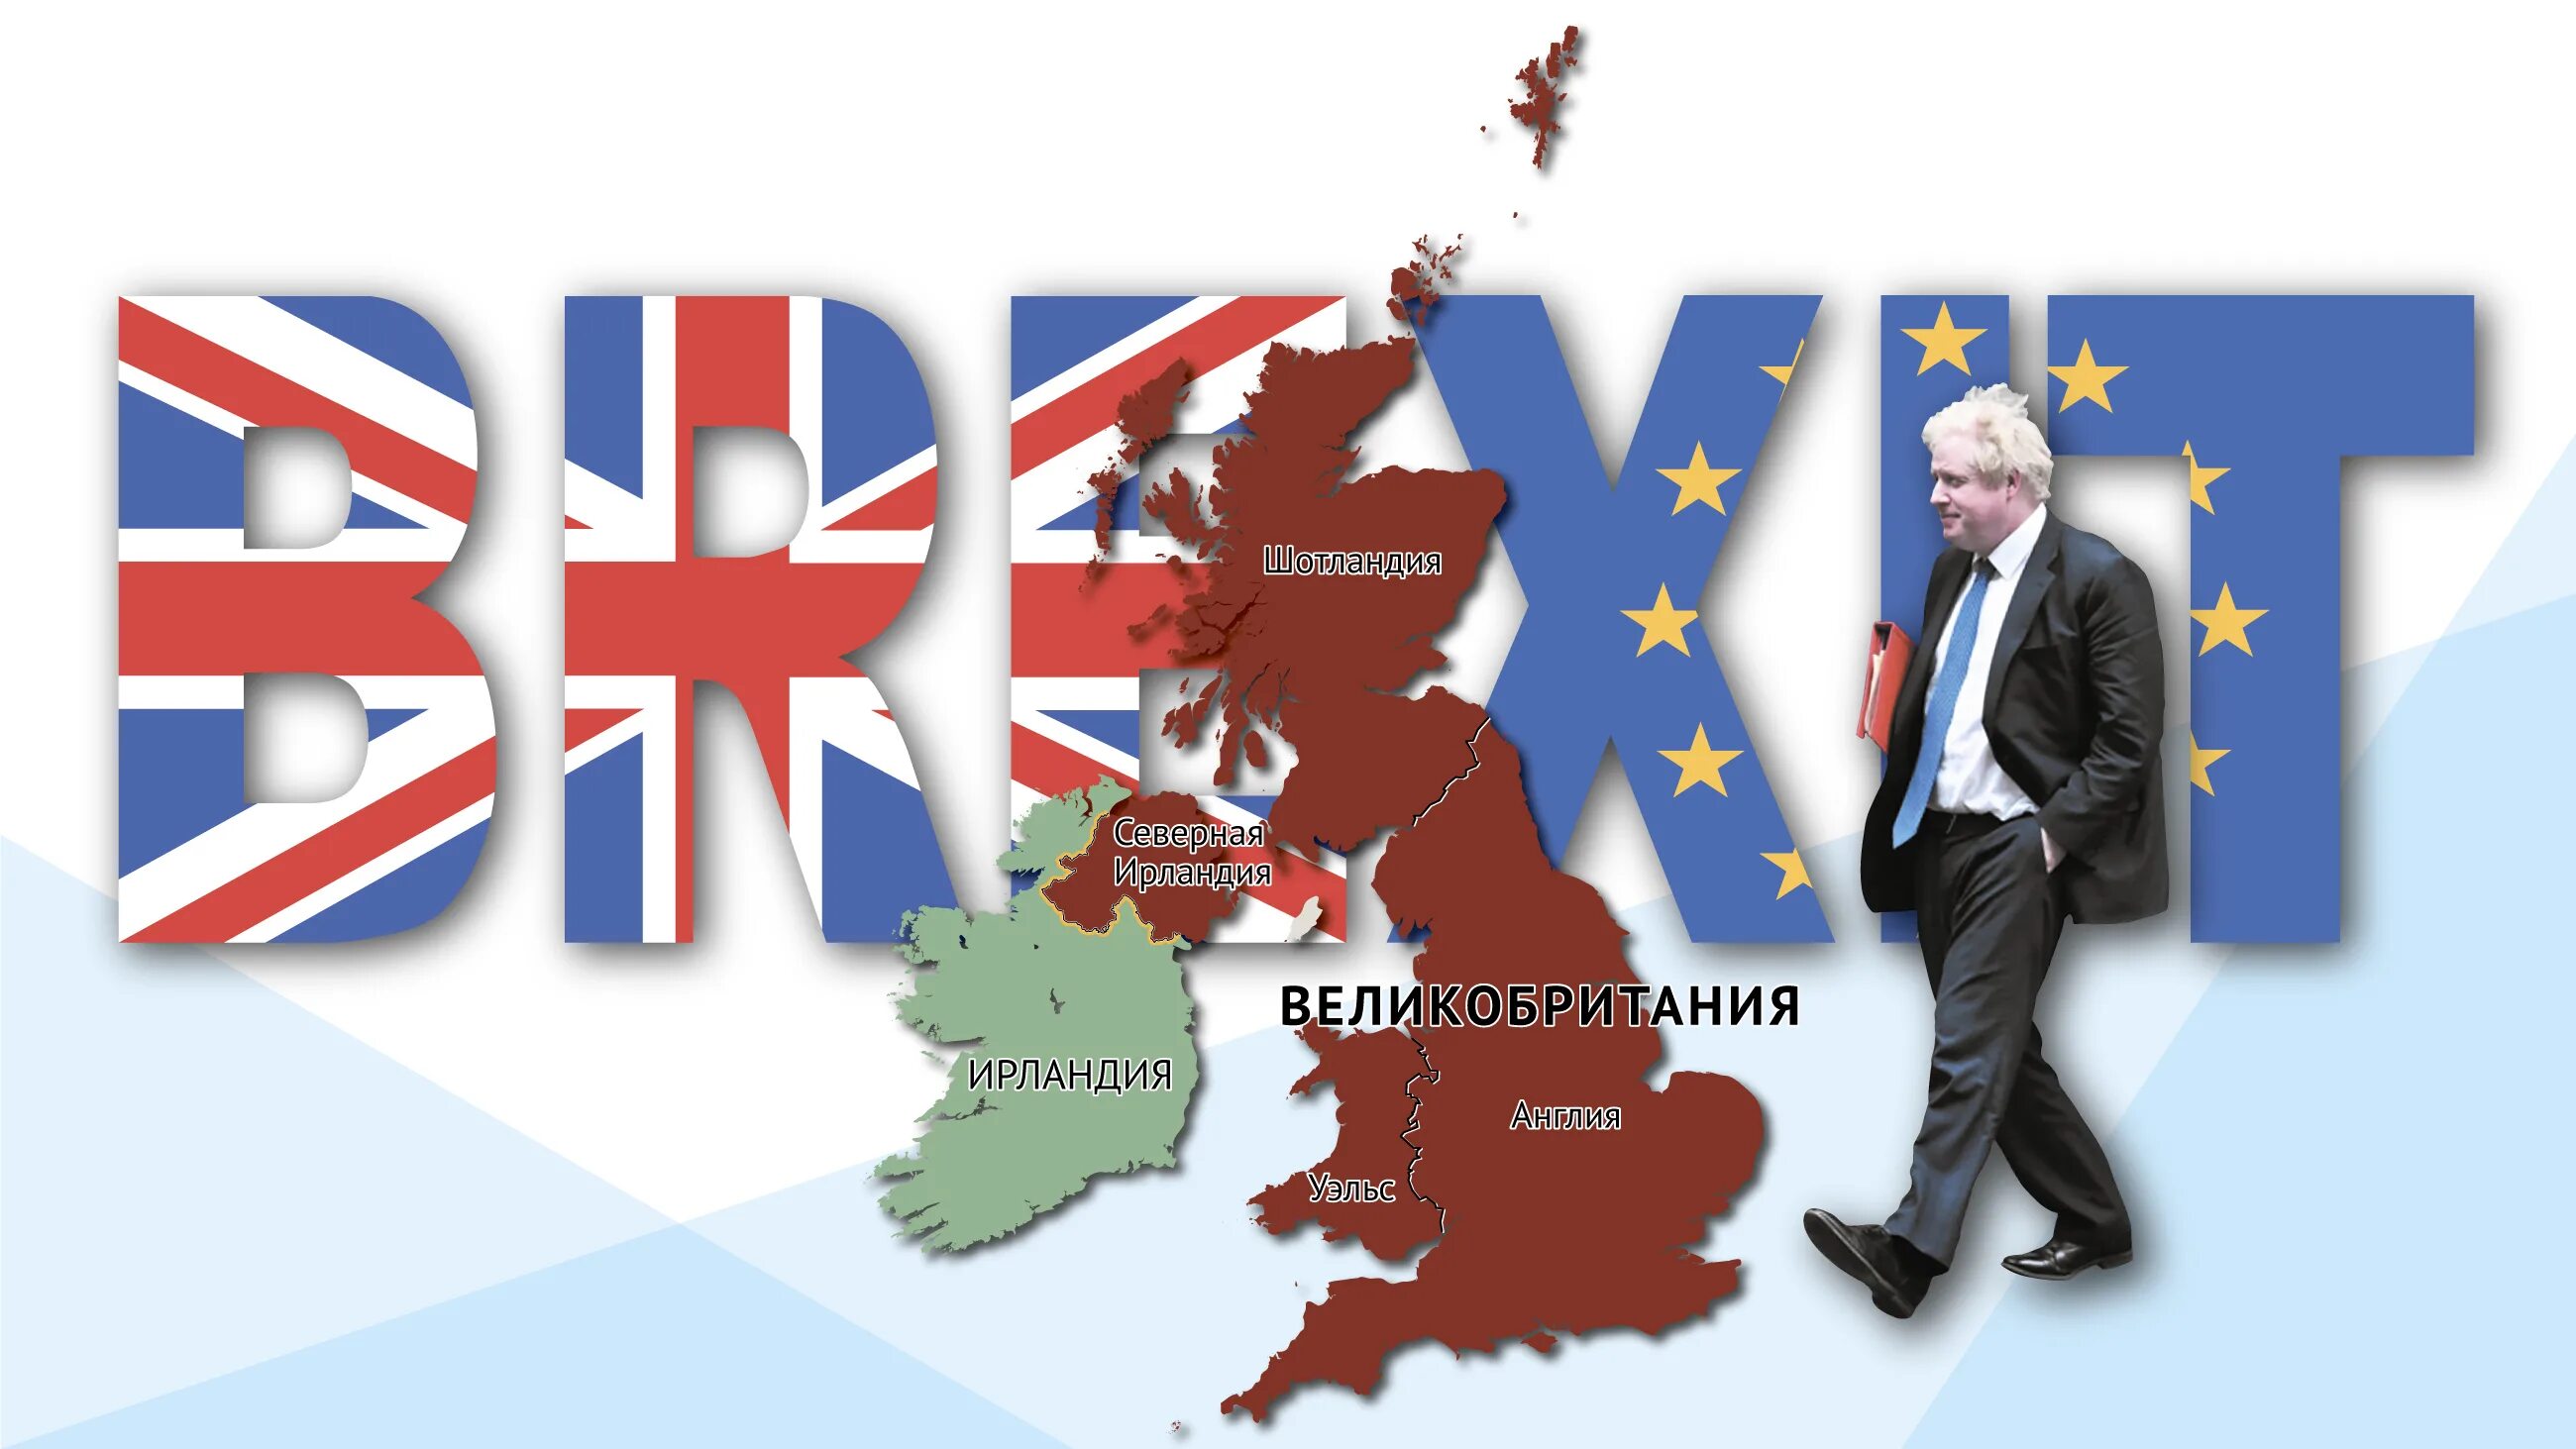 Великобритания является европой. Карта Великобритании. Джонсон и Брексит. Северная Ирландия и Брексит. Консервативная партия Великобритании эмблема.